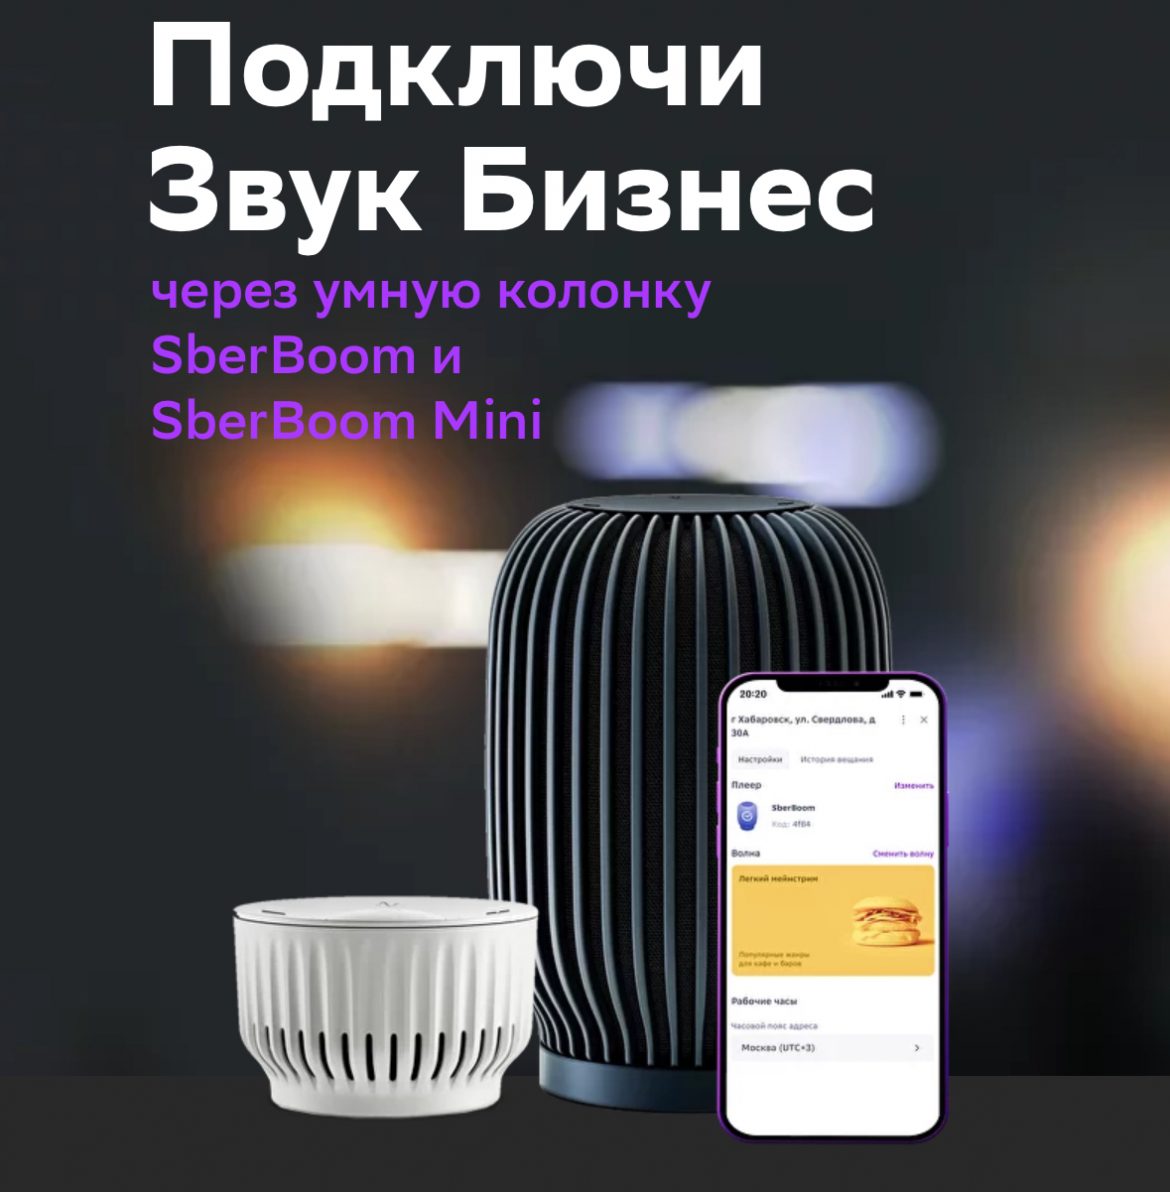 Сбер выпустил специальные колонки SberBoom для владельцев бизнеса